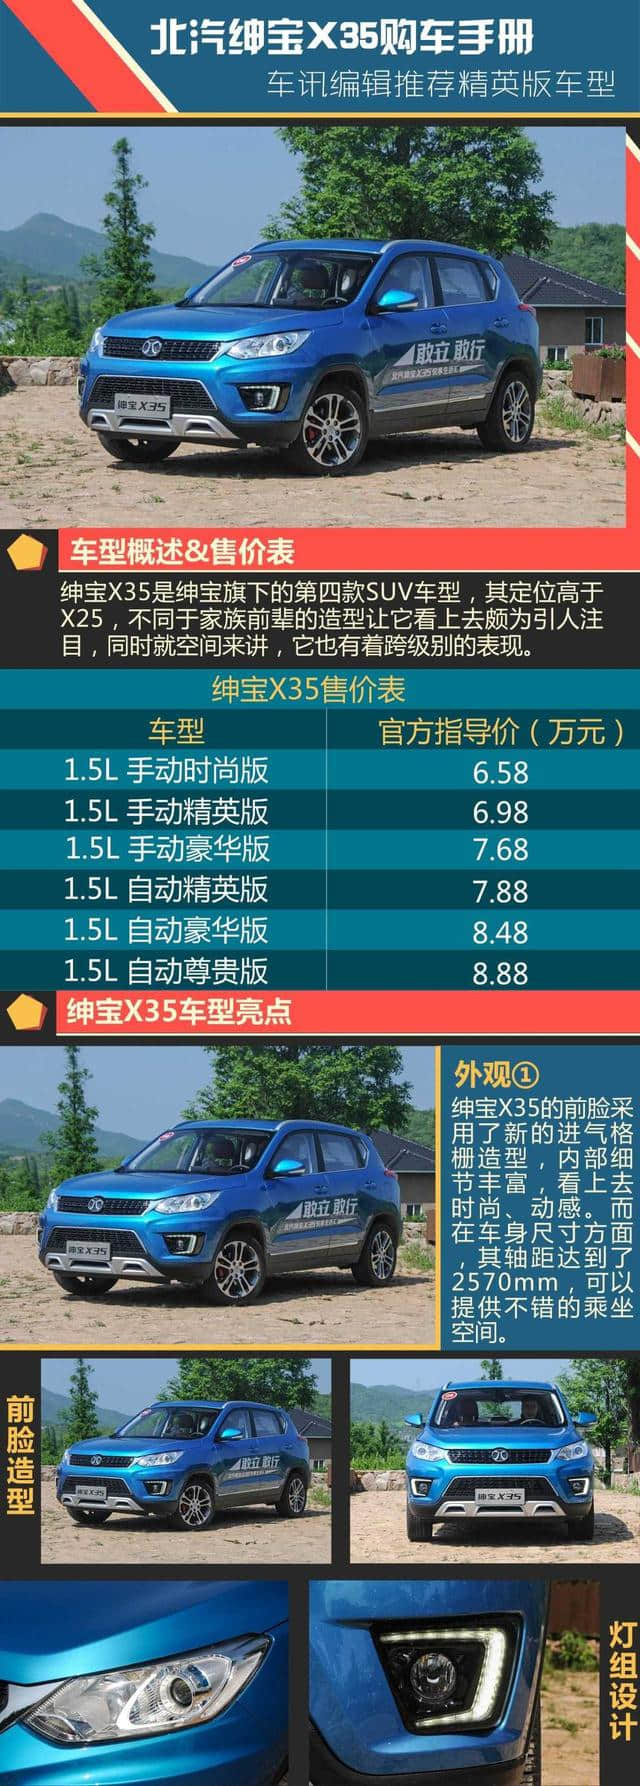 单车导购推荐购买精英版车型 北汽绅宝X35购车手册